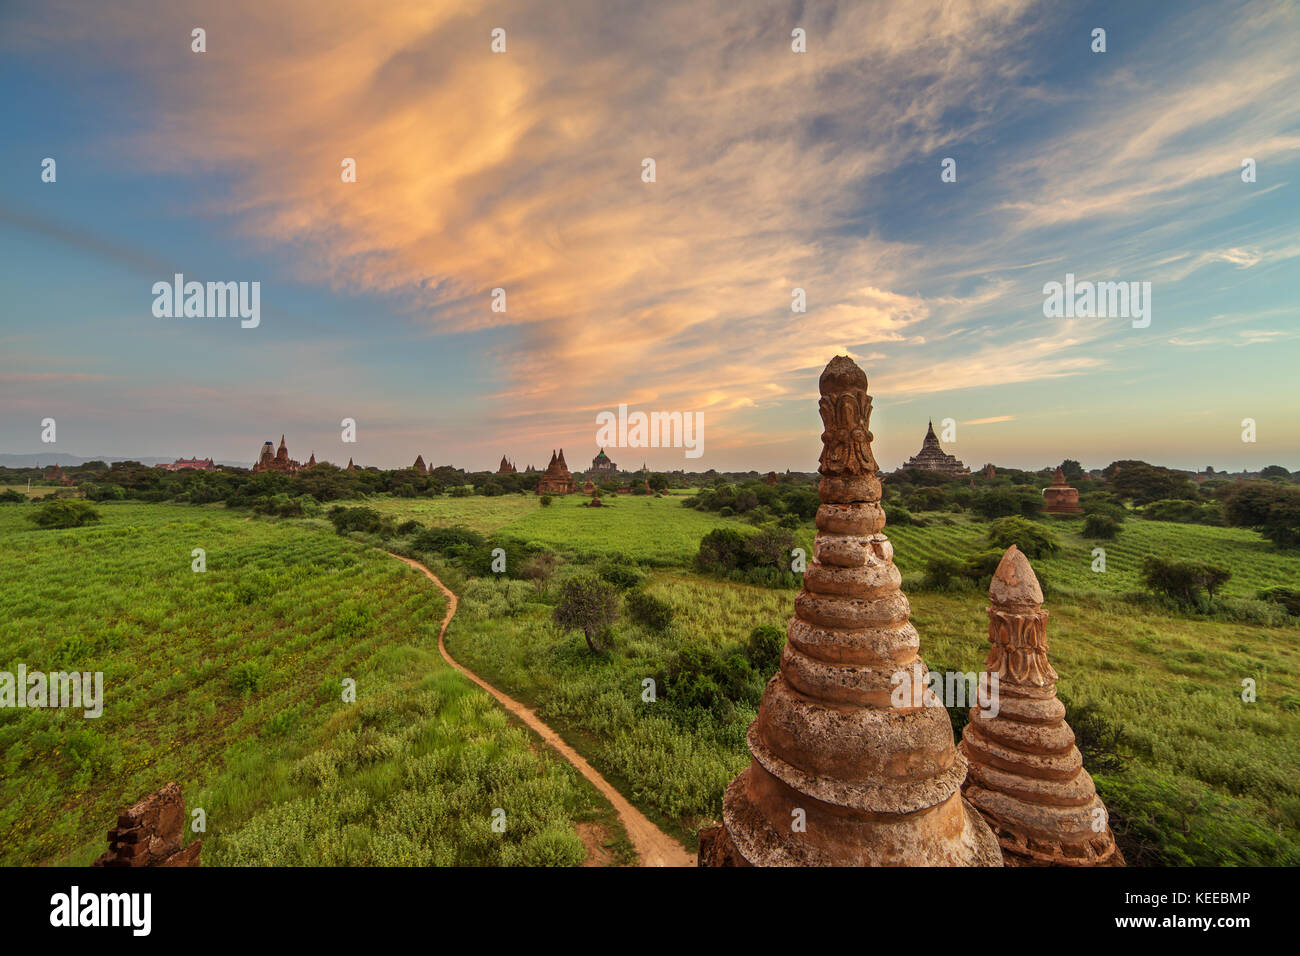 Beau lever de soleil sur l'ancien pagodes de Bagan, myanmar Banque D'Images